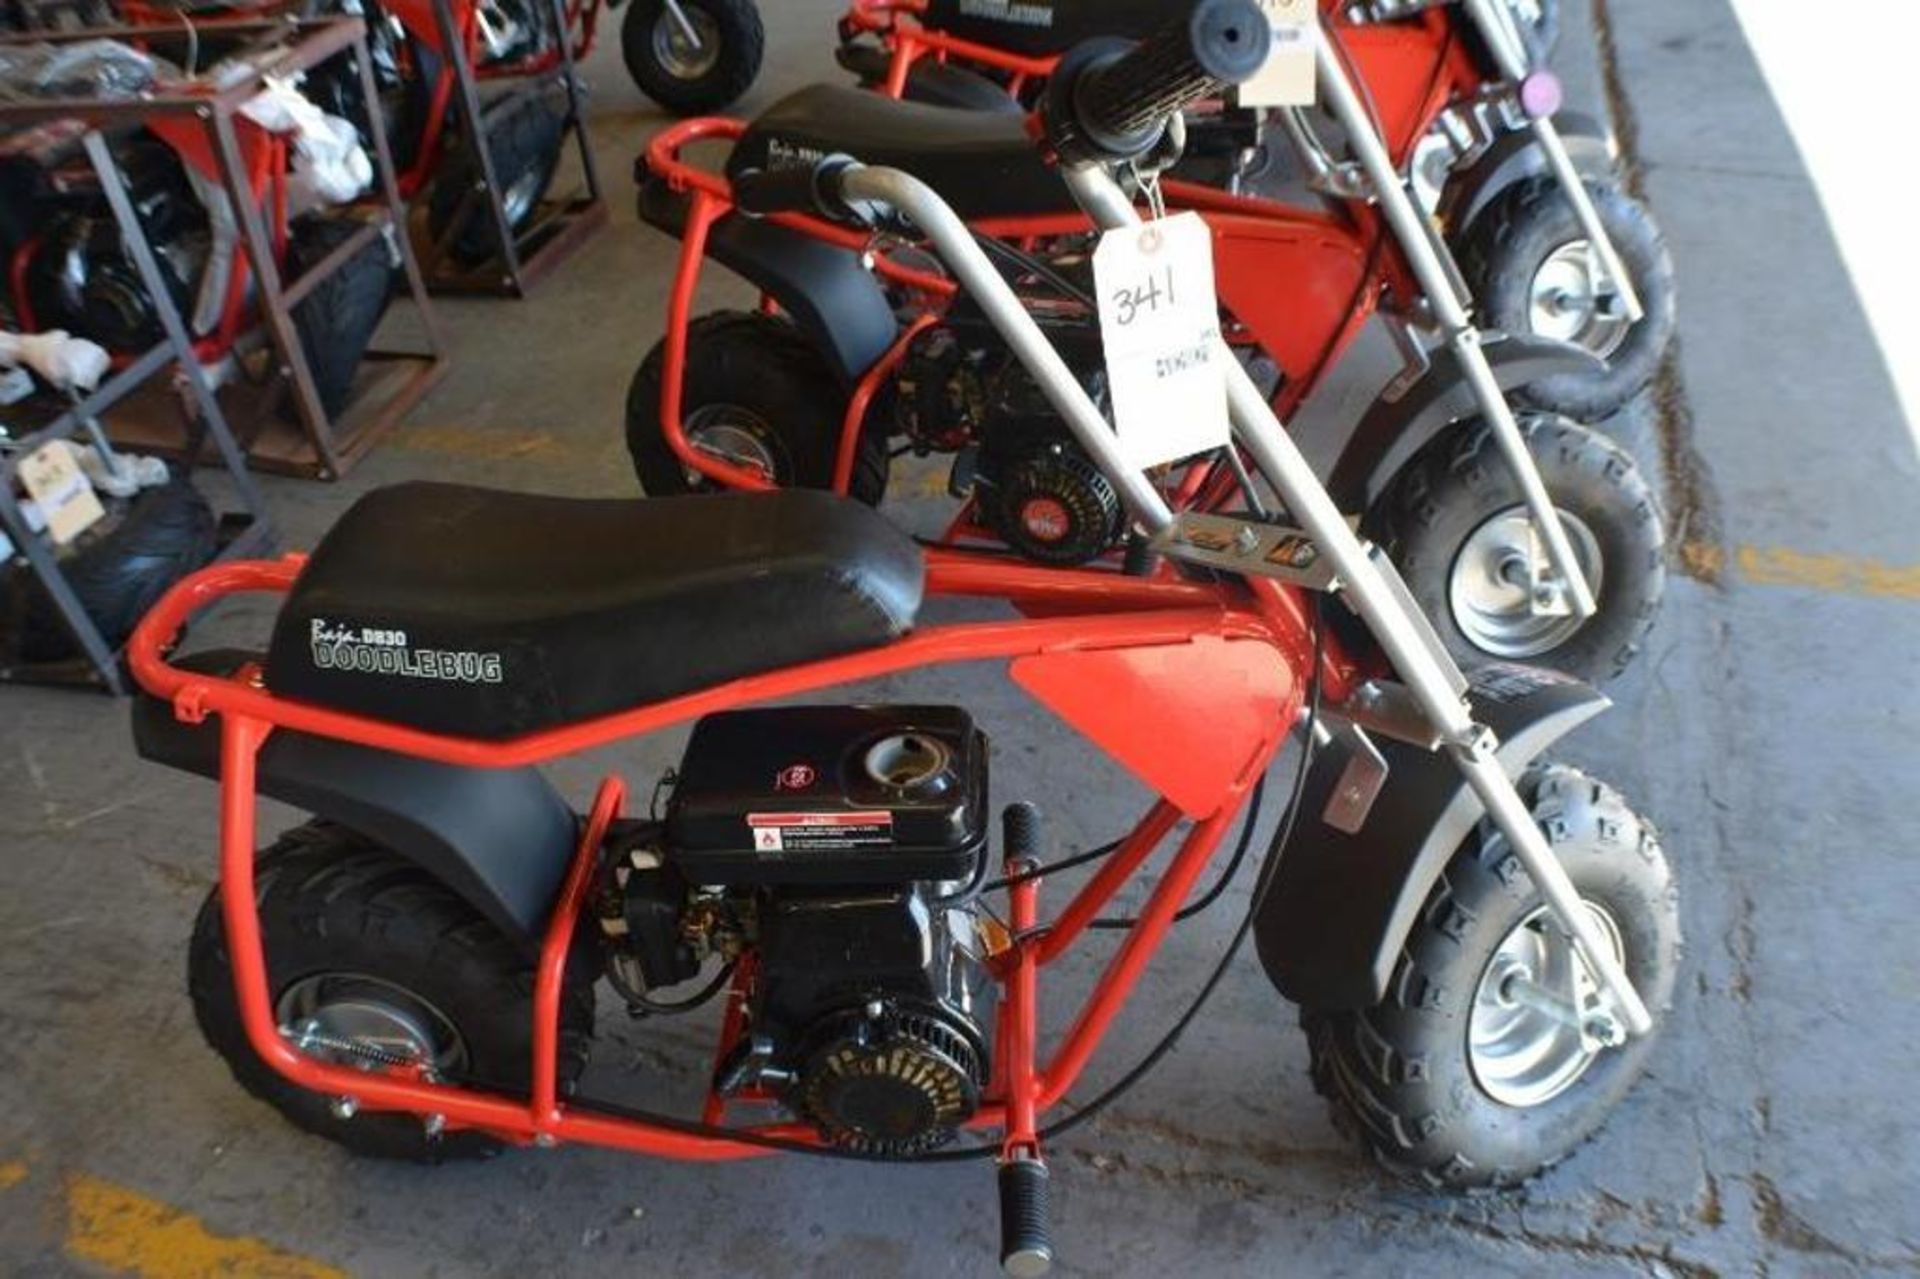 Mini Bike 97cc 4 Stroke Red/ Black Color - Image 2 of 5